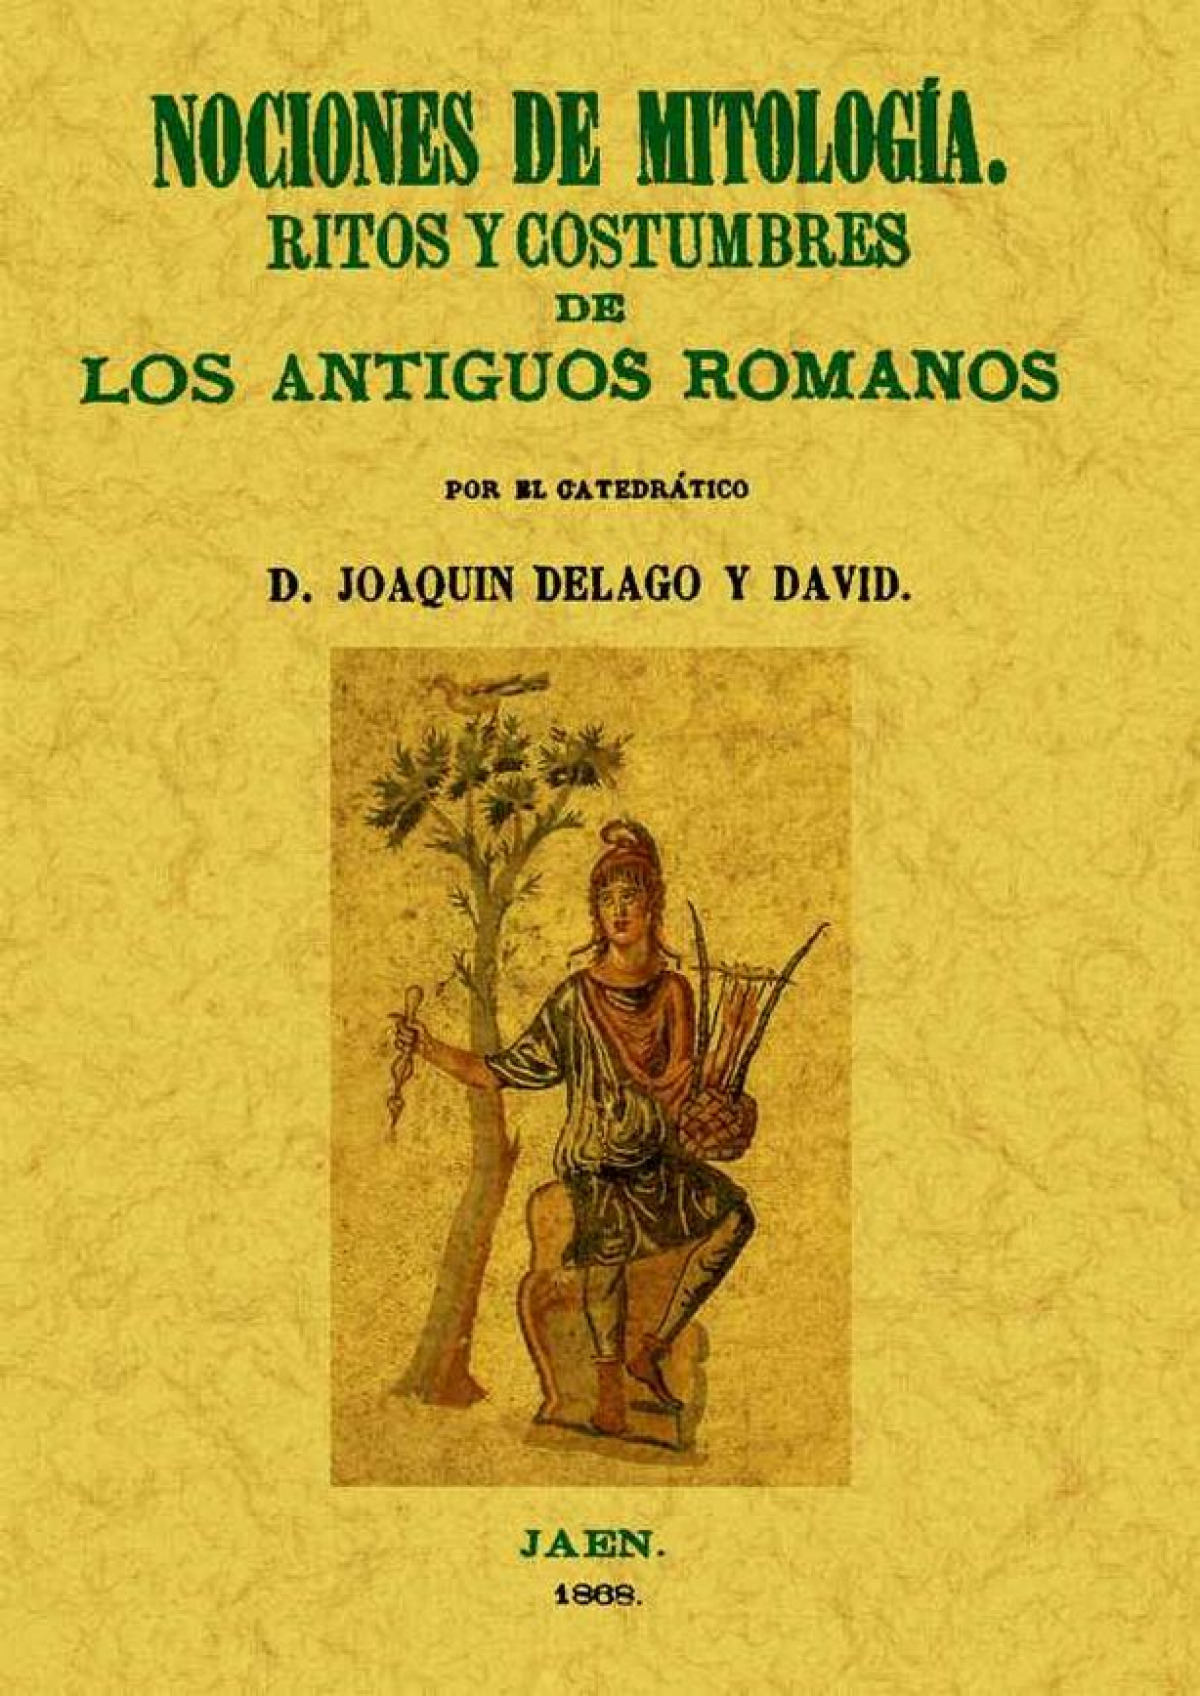 Nociones de mitología. Ritos y costumbres de los antiguos romanos - Delago y David, Joaquín